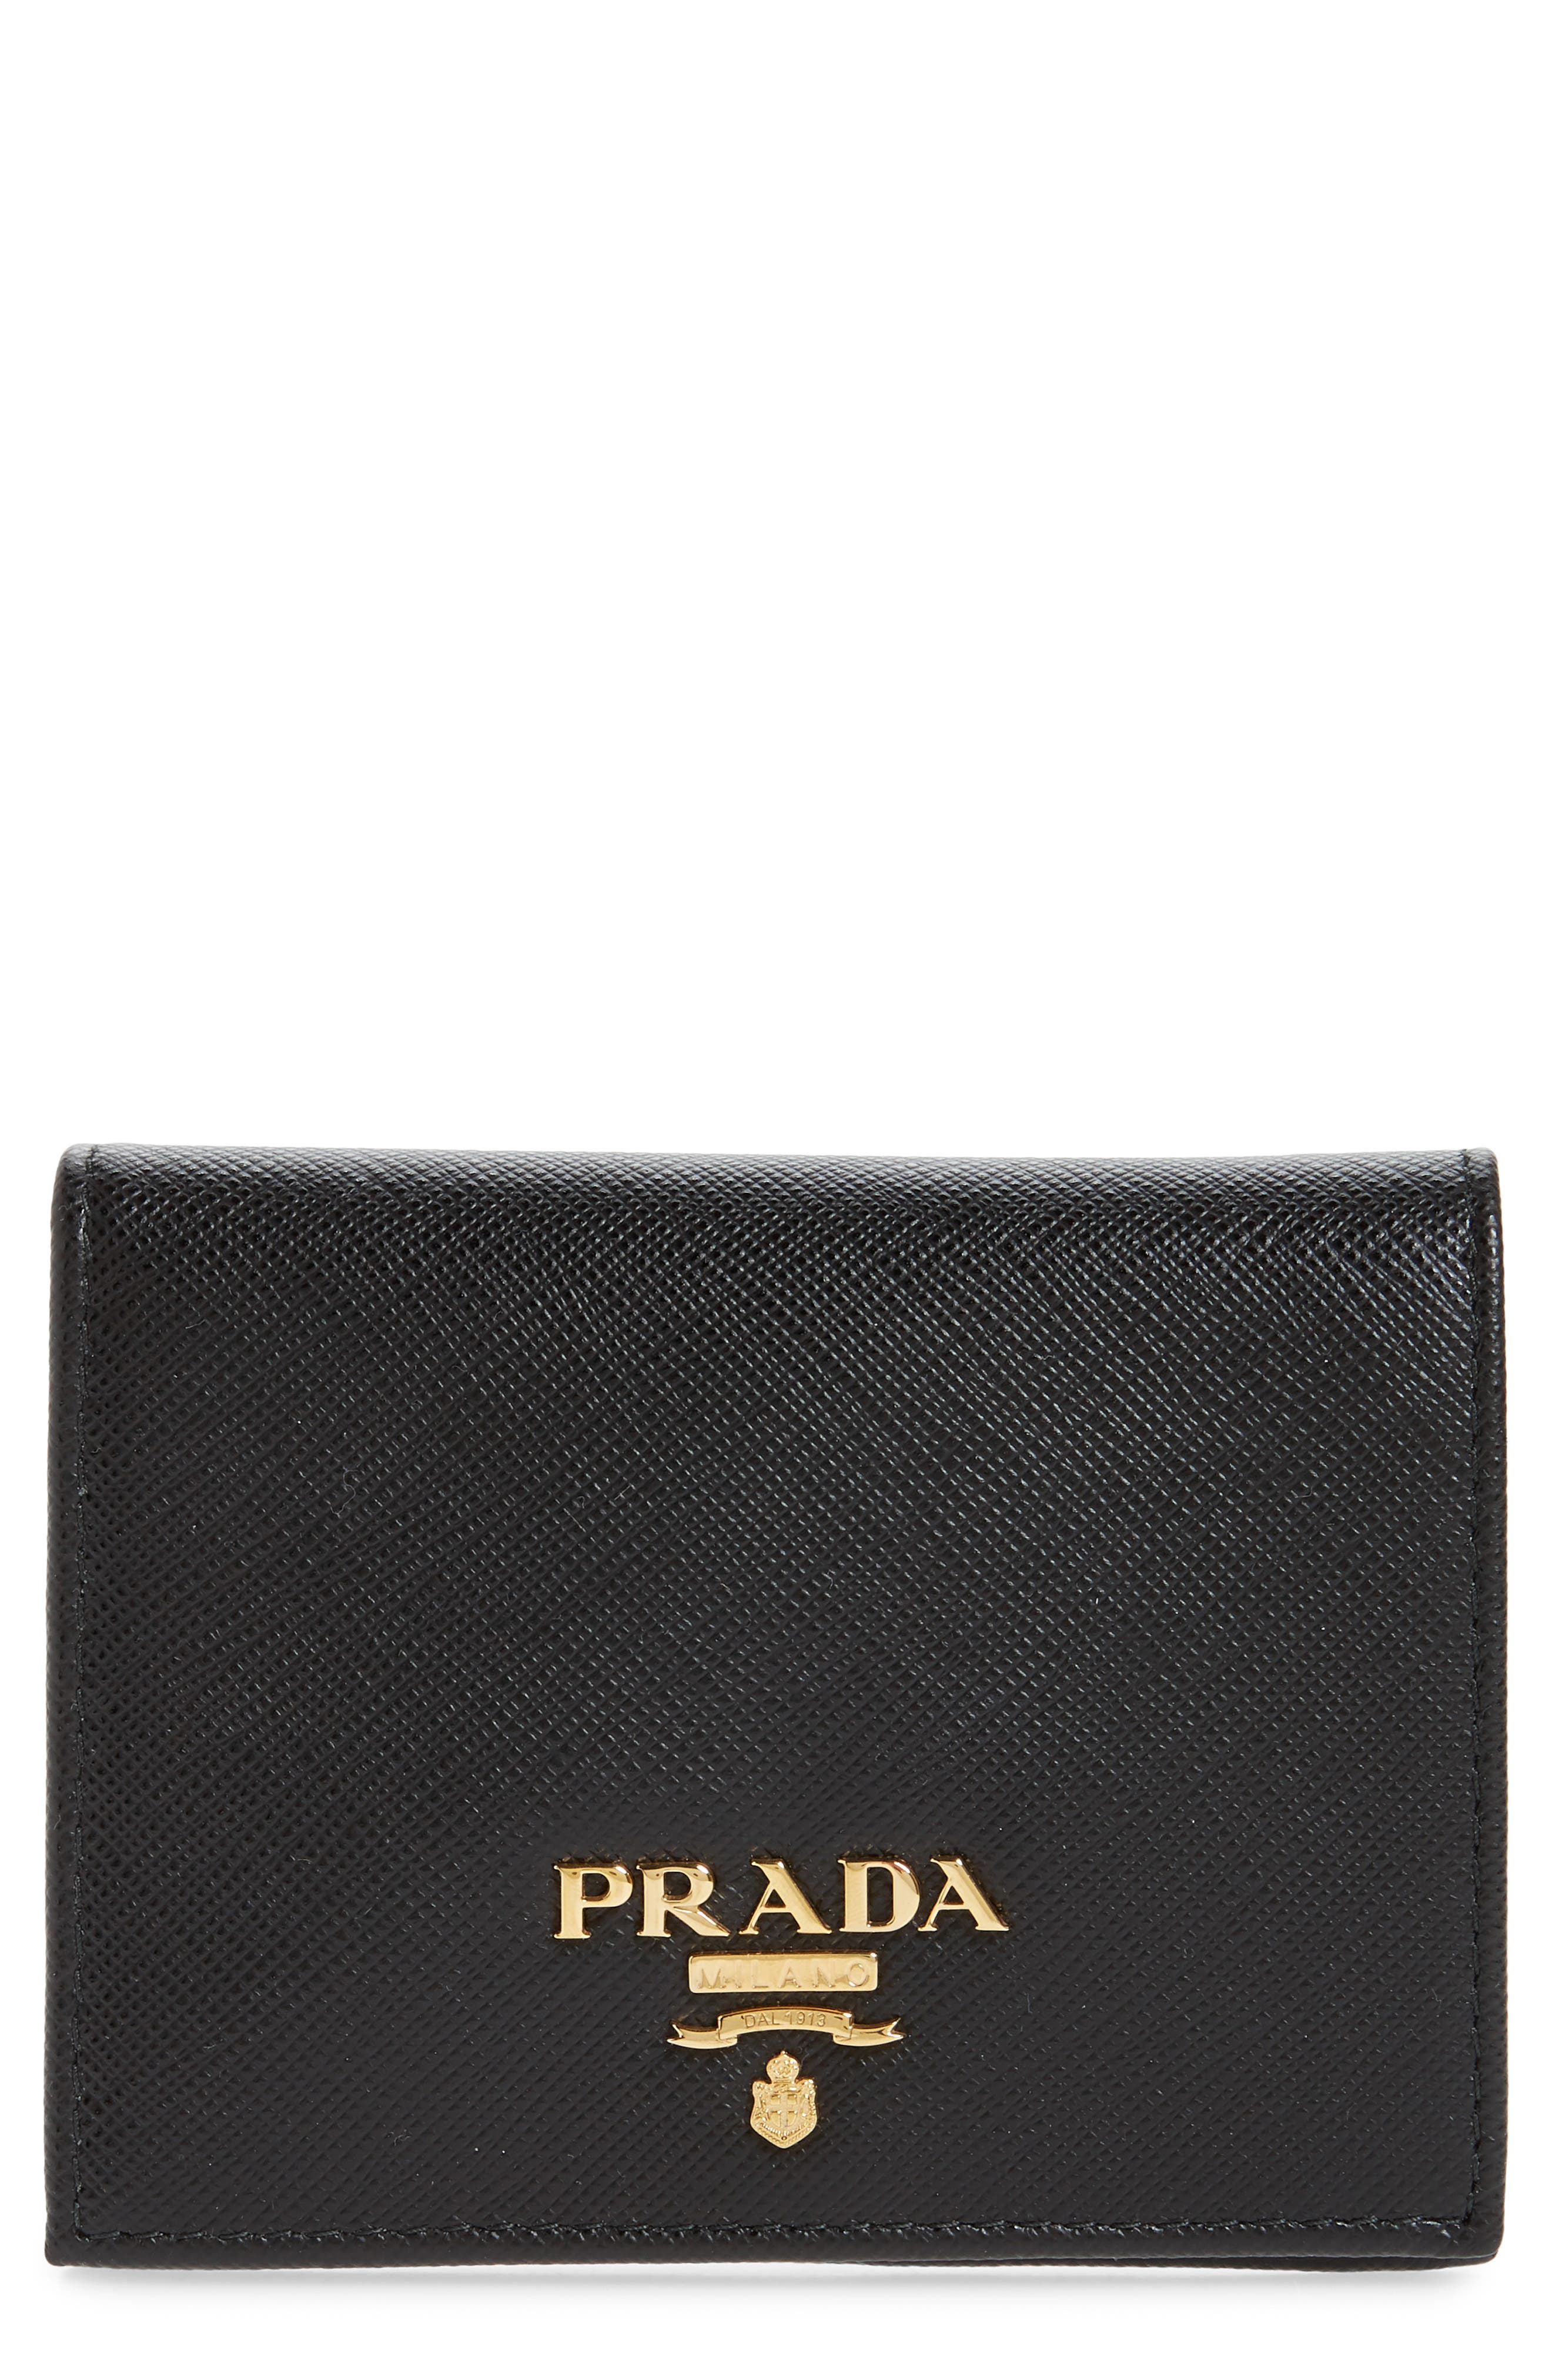 prada long wallet price